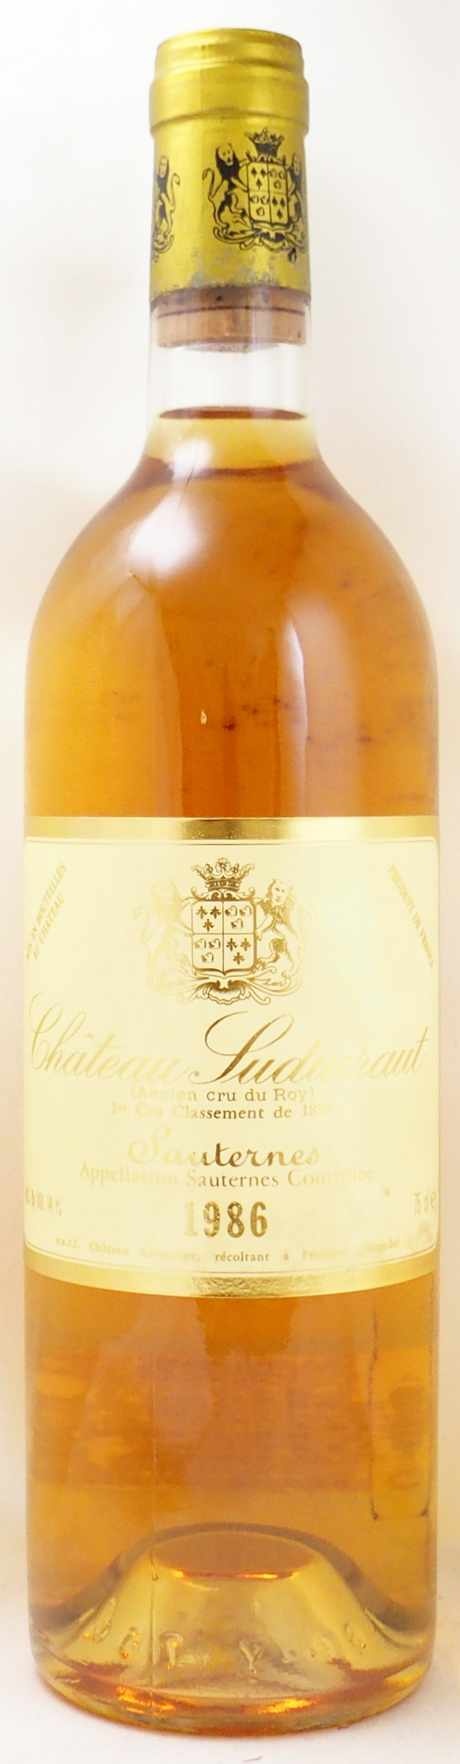 1986年 シャトー スデュイロー CHATEAU SUDUIRAUT の販売[ヴィンテージワイン専門店のNengou-wine.com]